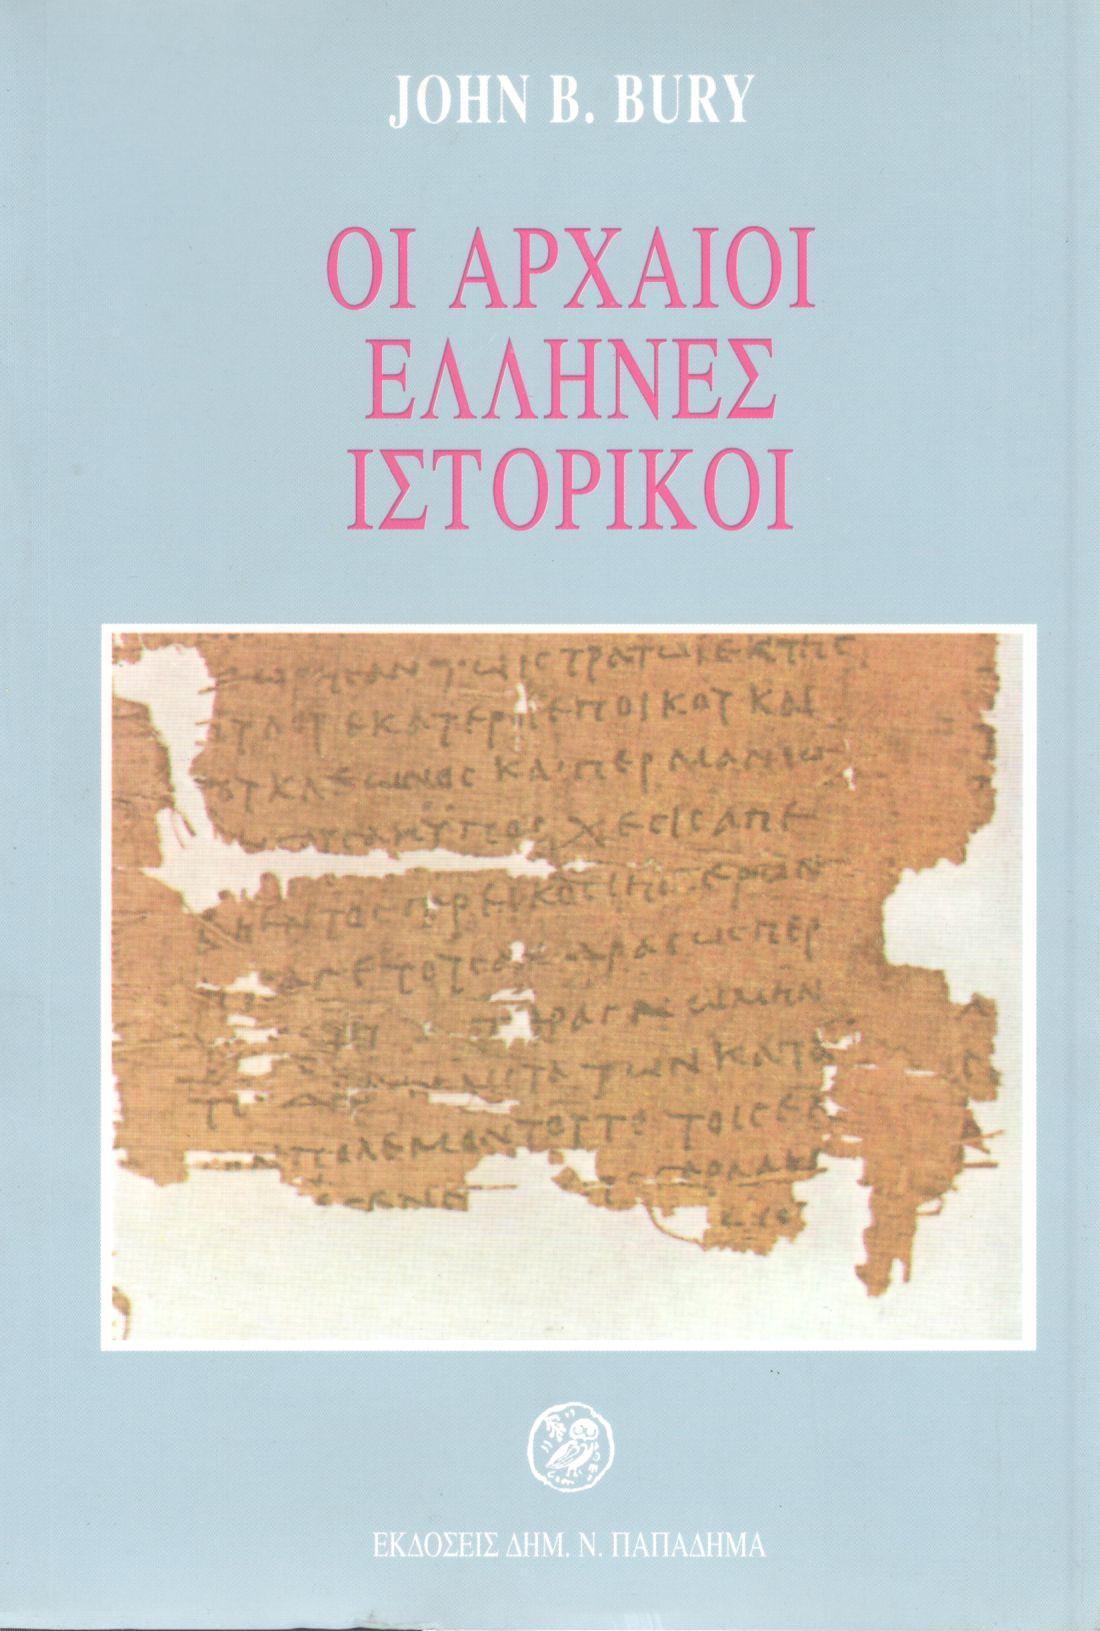 Οι αρχαίοι 'Ελληνες ιστορικοί